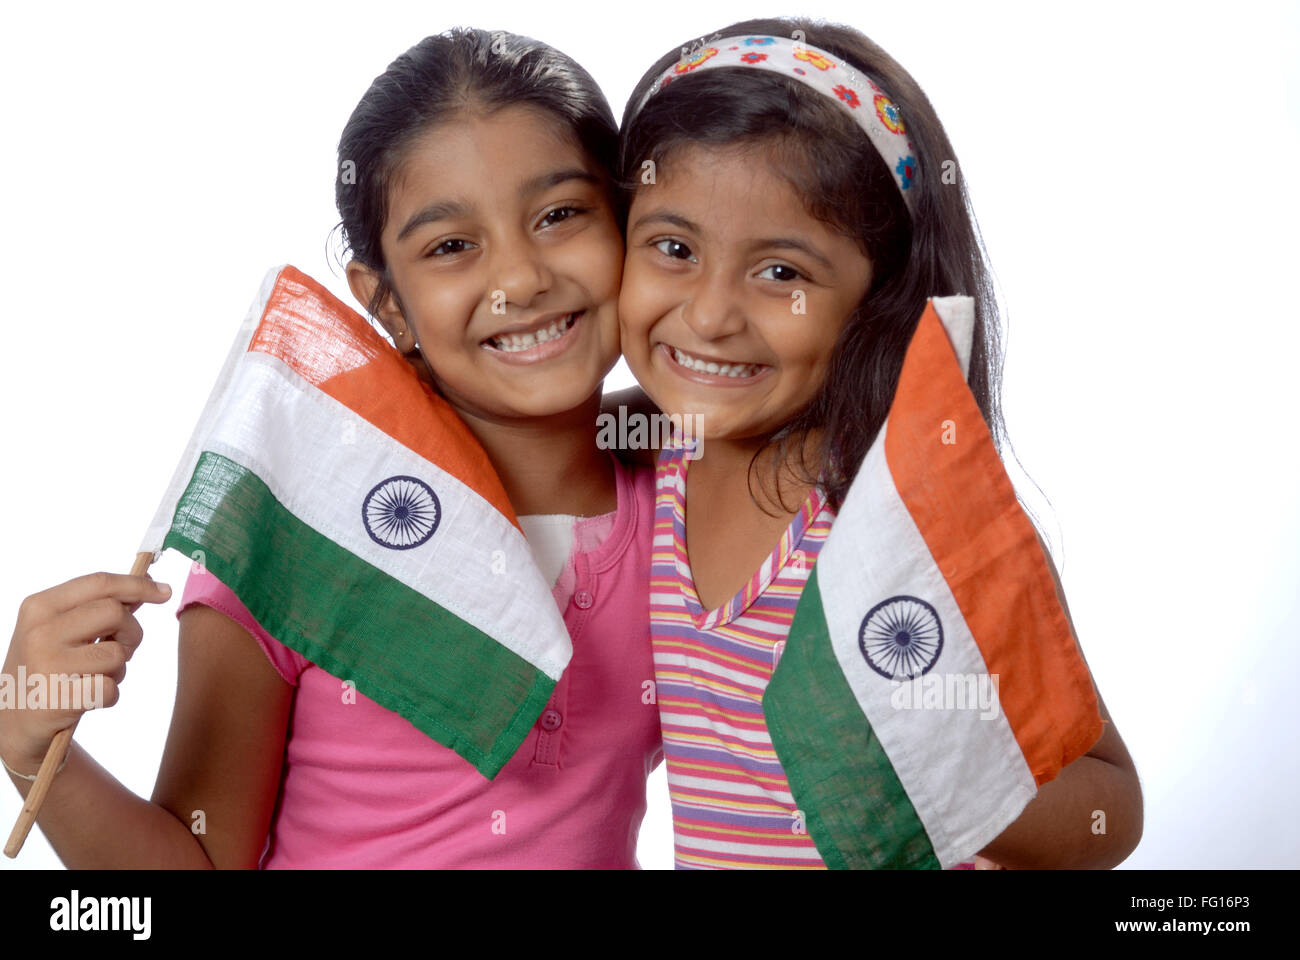 Südasiatische indische Mädchen mit Flagge Indiens zeigen spitzbübisch frech Ausdruck Herr # 152.364 Stockfoto